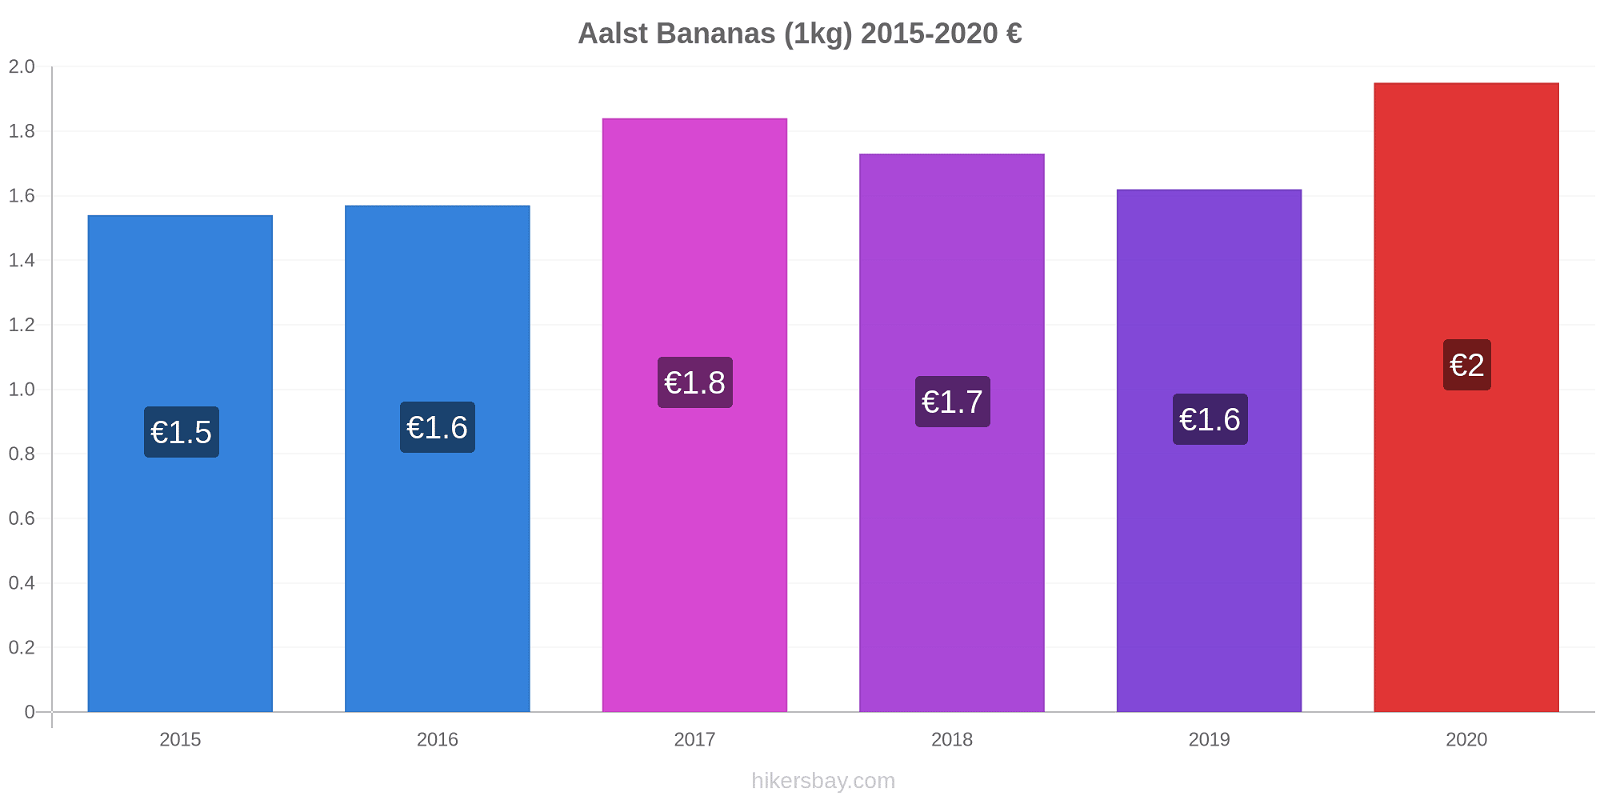 Aalst price changes Bananas (1kg) hikersbay.com